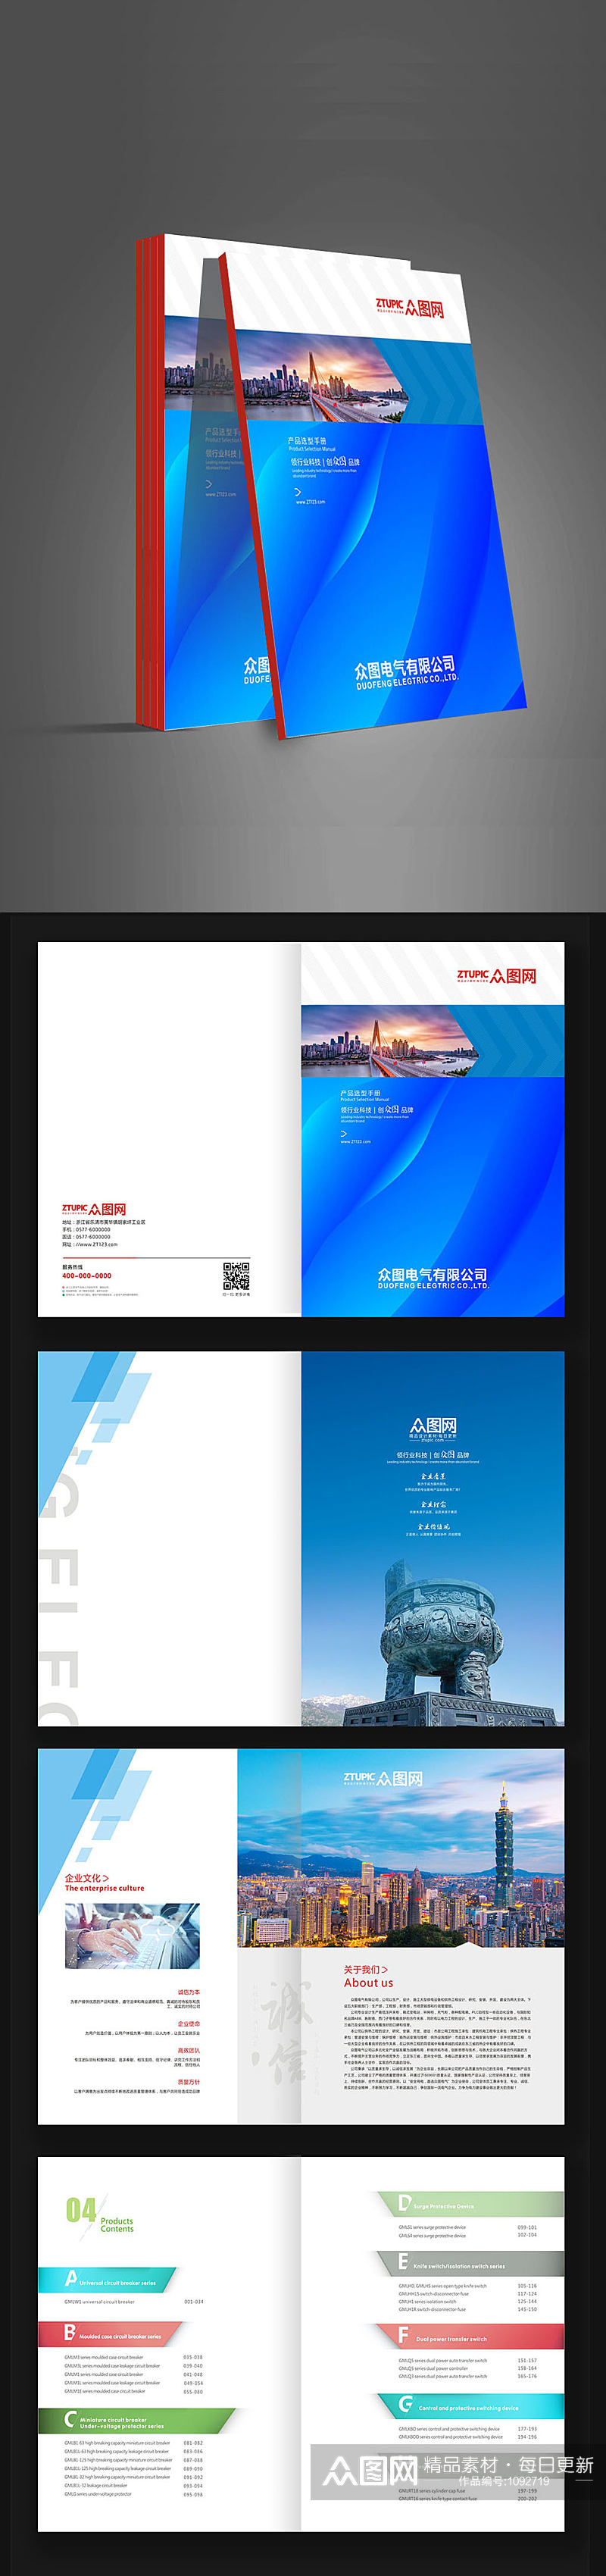 蓝色企业办公科技蓝色封面画册素材